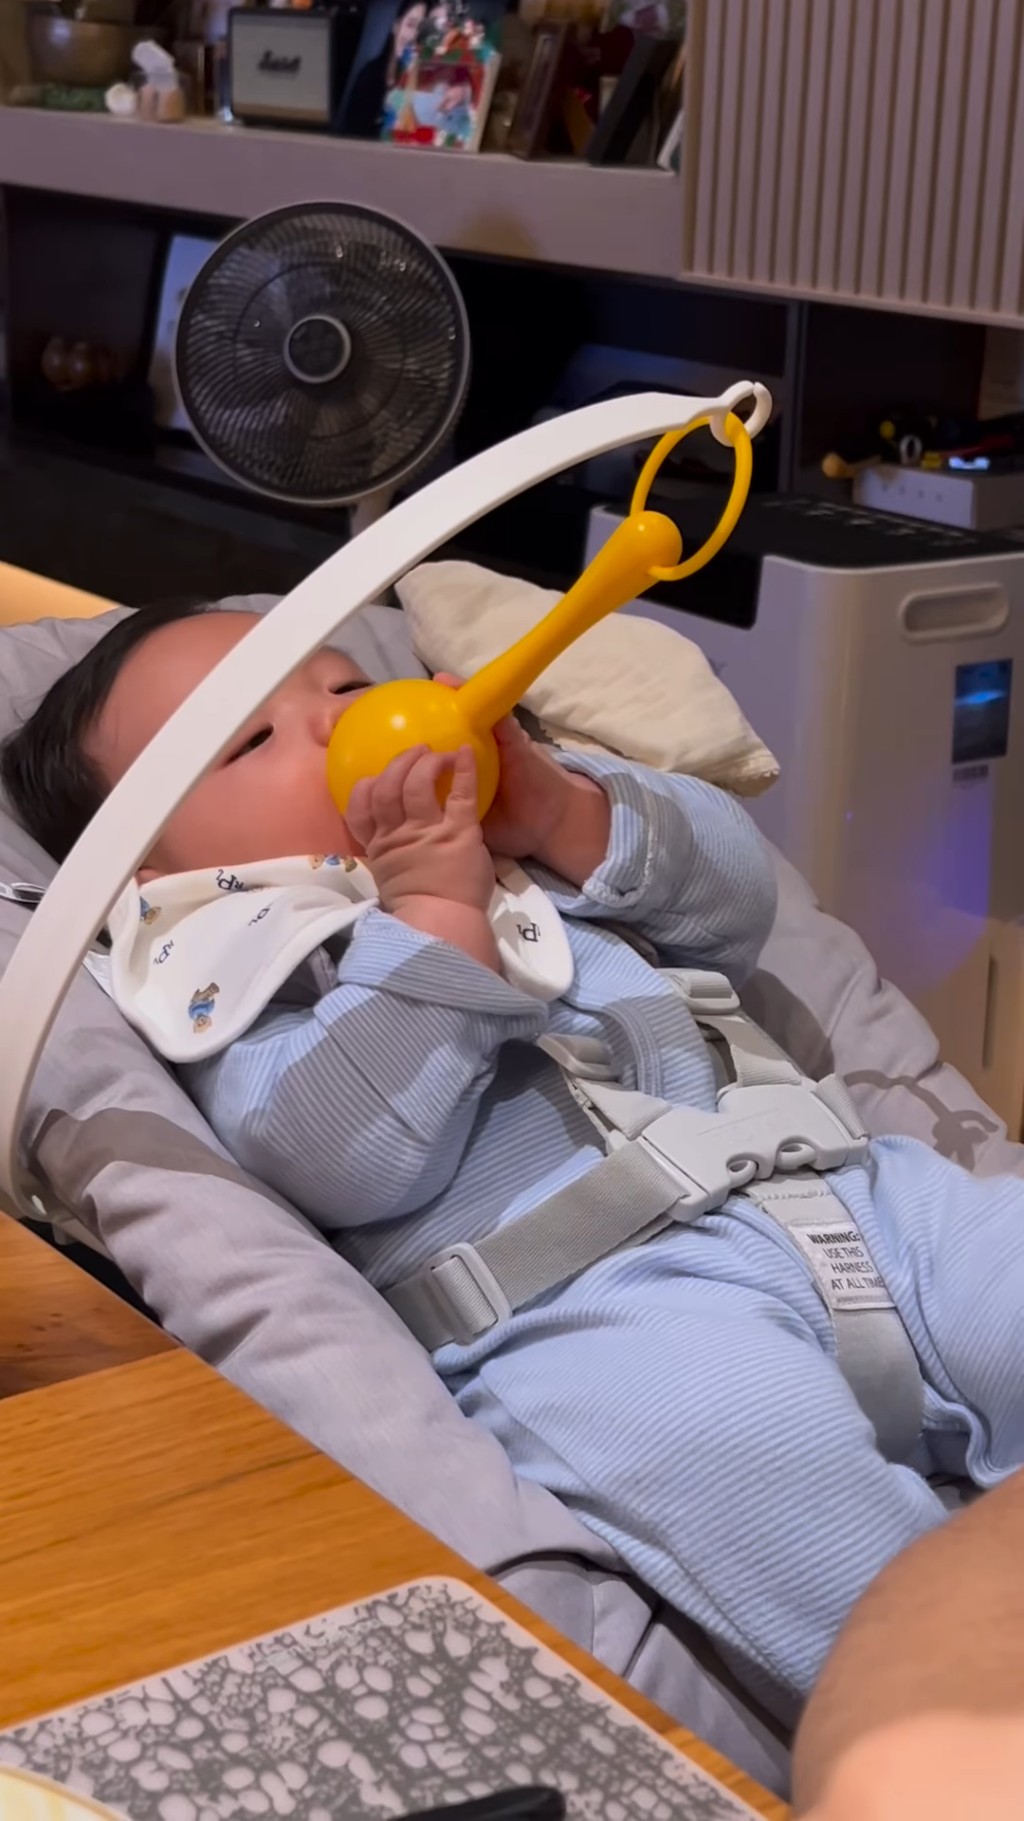 張寶兒會在highchair綁一個好像啷啷的玩具讓袁咕碌自己用手抓。